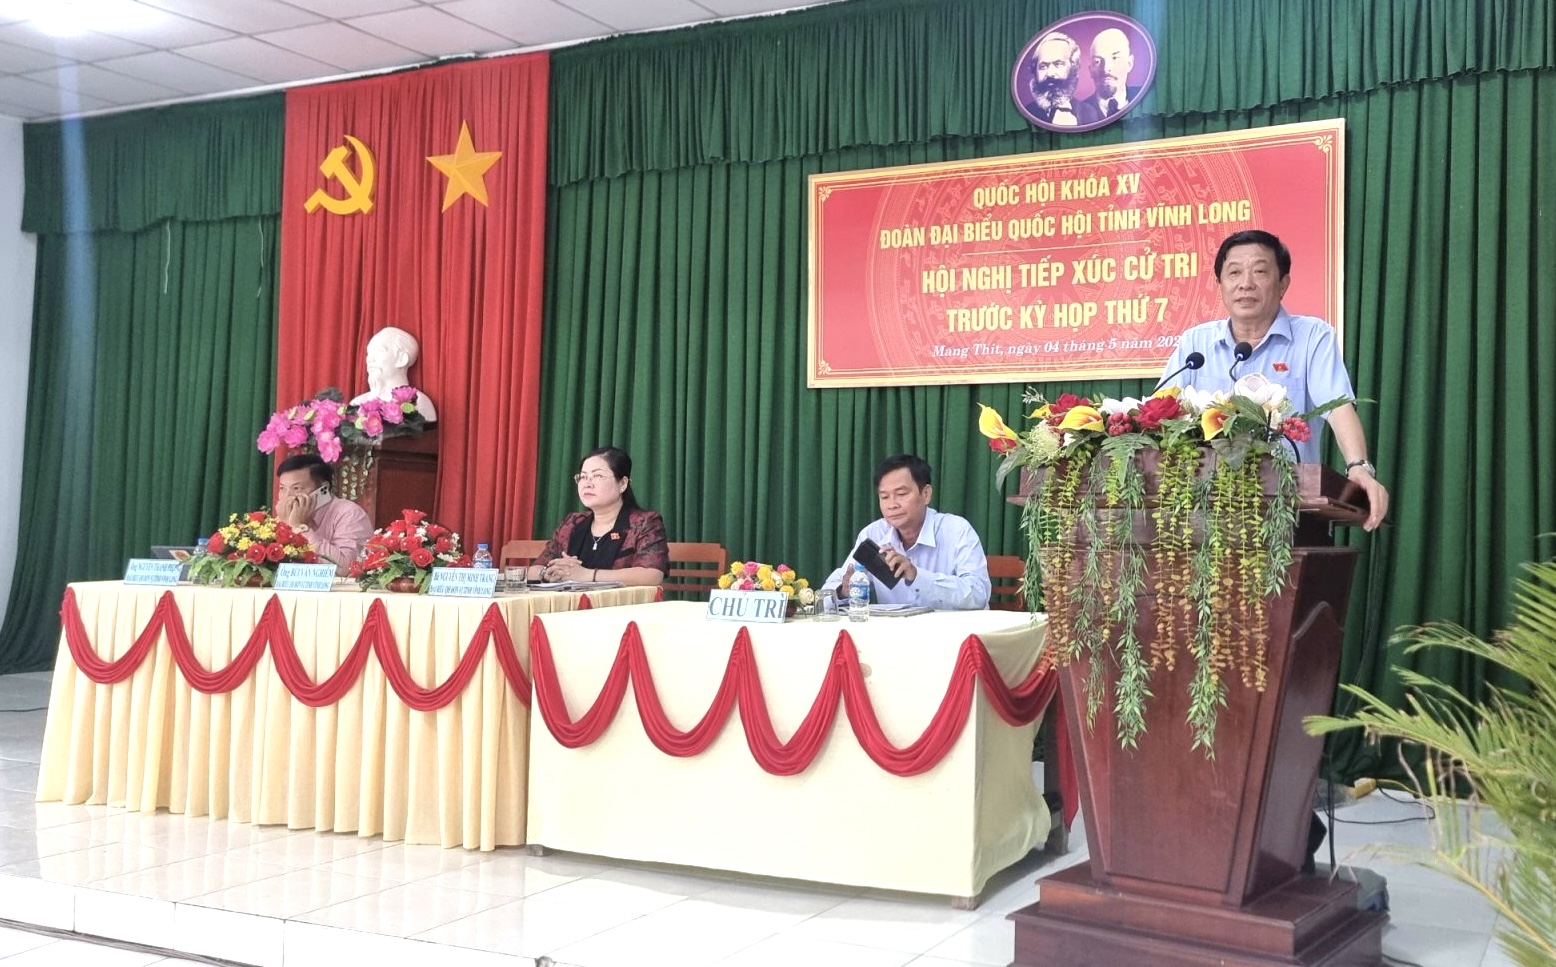 Đoàn Đại biểu Quốc hội đơn vị tỉnh Vĩnh Long tiếp xúc cử tri tại huyện Mang Thít.